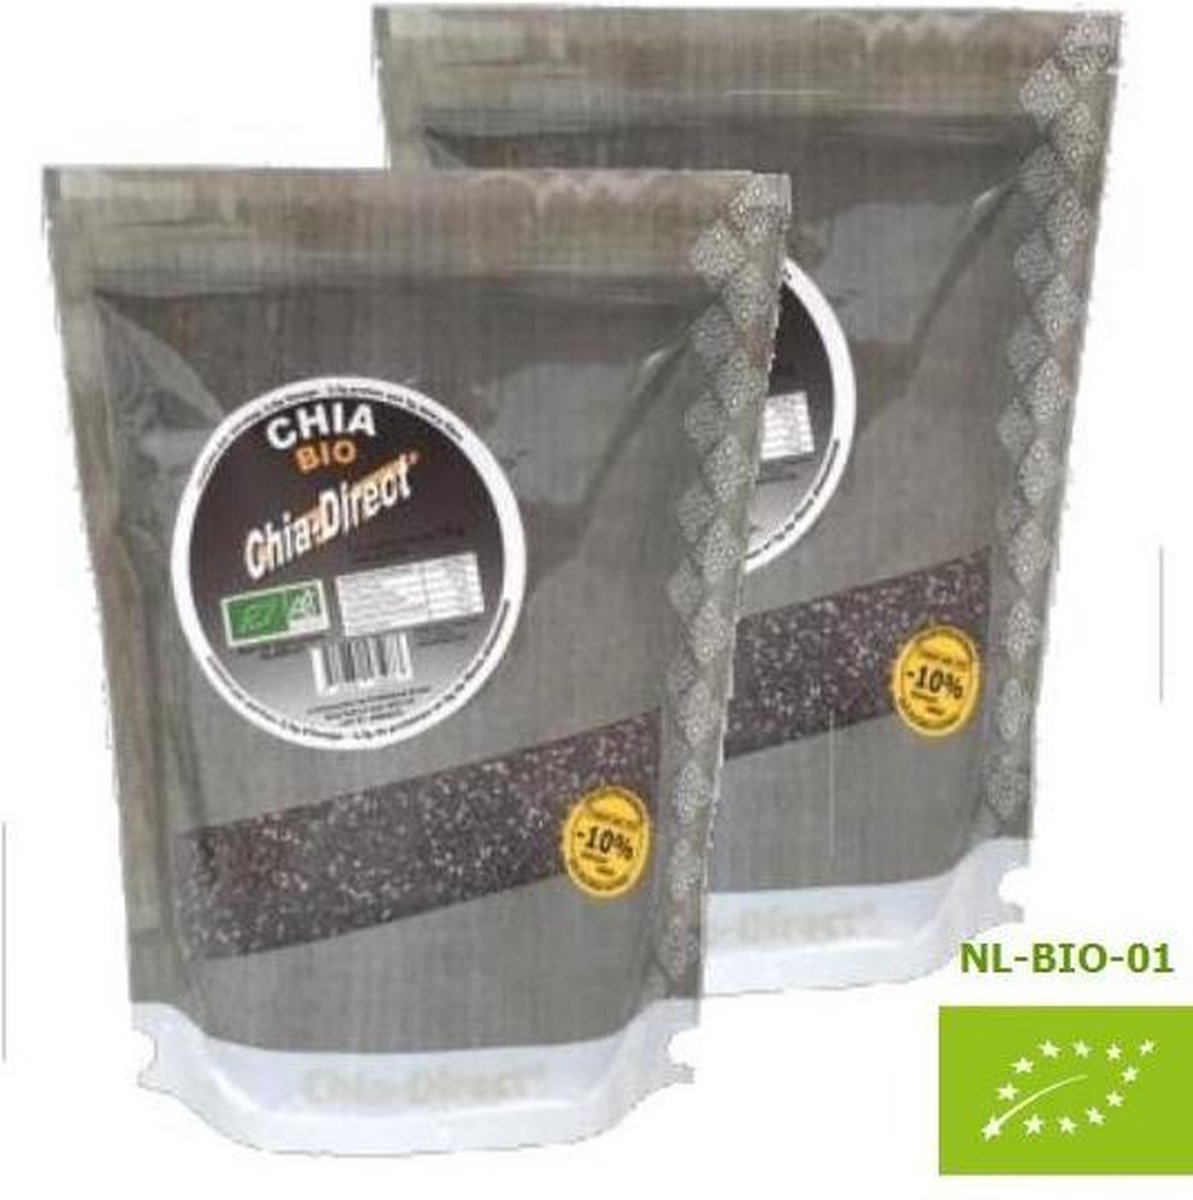 rauwe 100% natuurlijke chia zaad 1kilo - prijs incl verzendkosten - (NL-BIO-01) - chia-direct